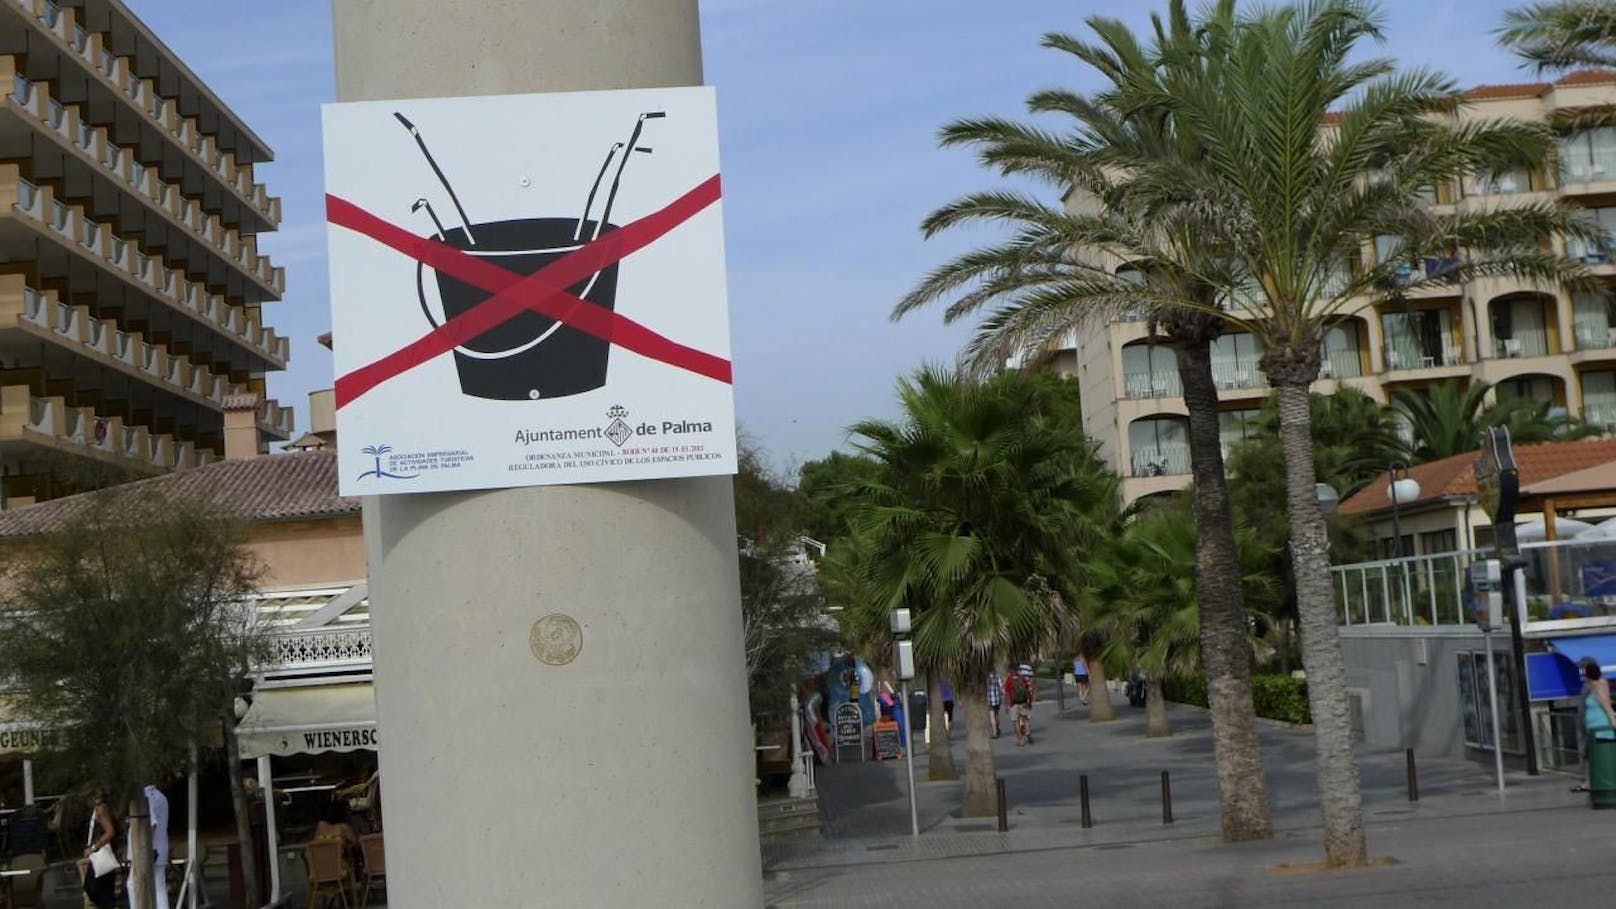 Dieses Schild gibts wohl nur auf Mallorca! Das &quot;Eimersaufen&quot; in den Straßen ist bereits seit 2012 verboten, jetzt hagelt es saftige Strafen von bis zu 3.000 Euro. 